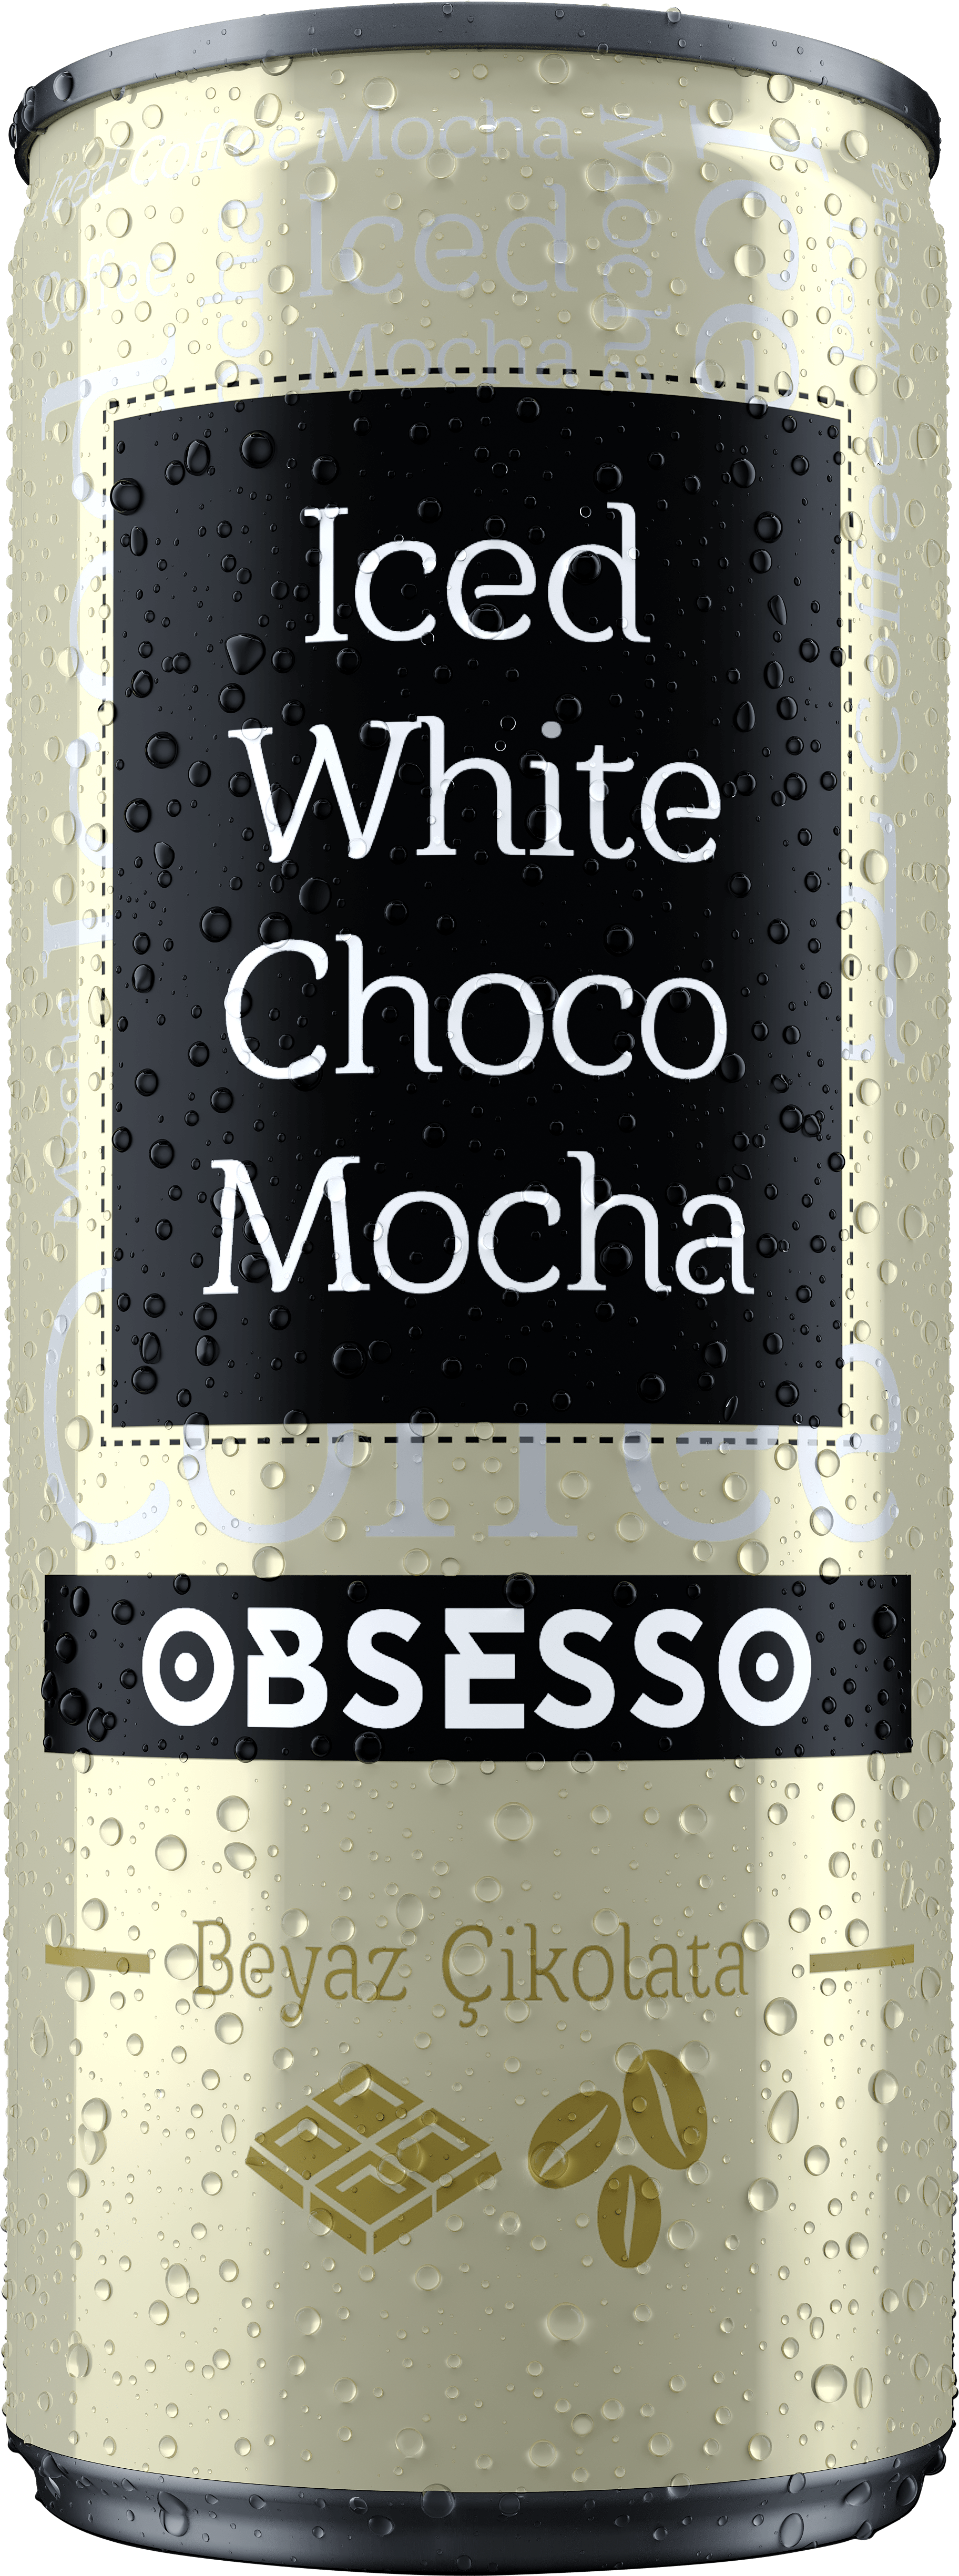 Obsesso White Choco Mocha